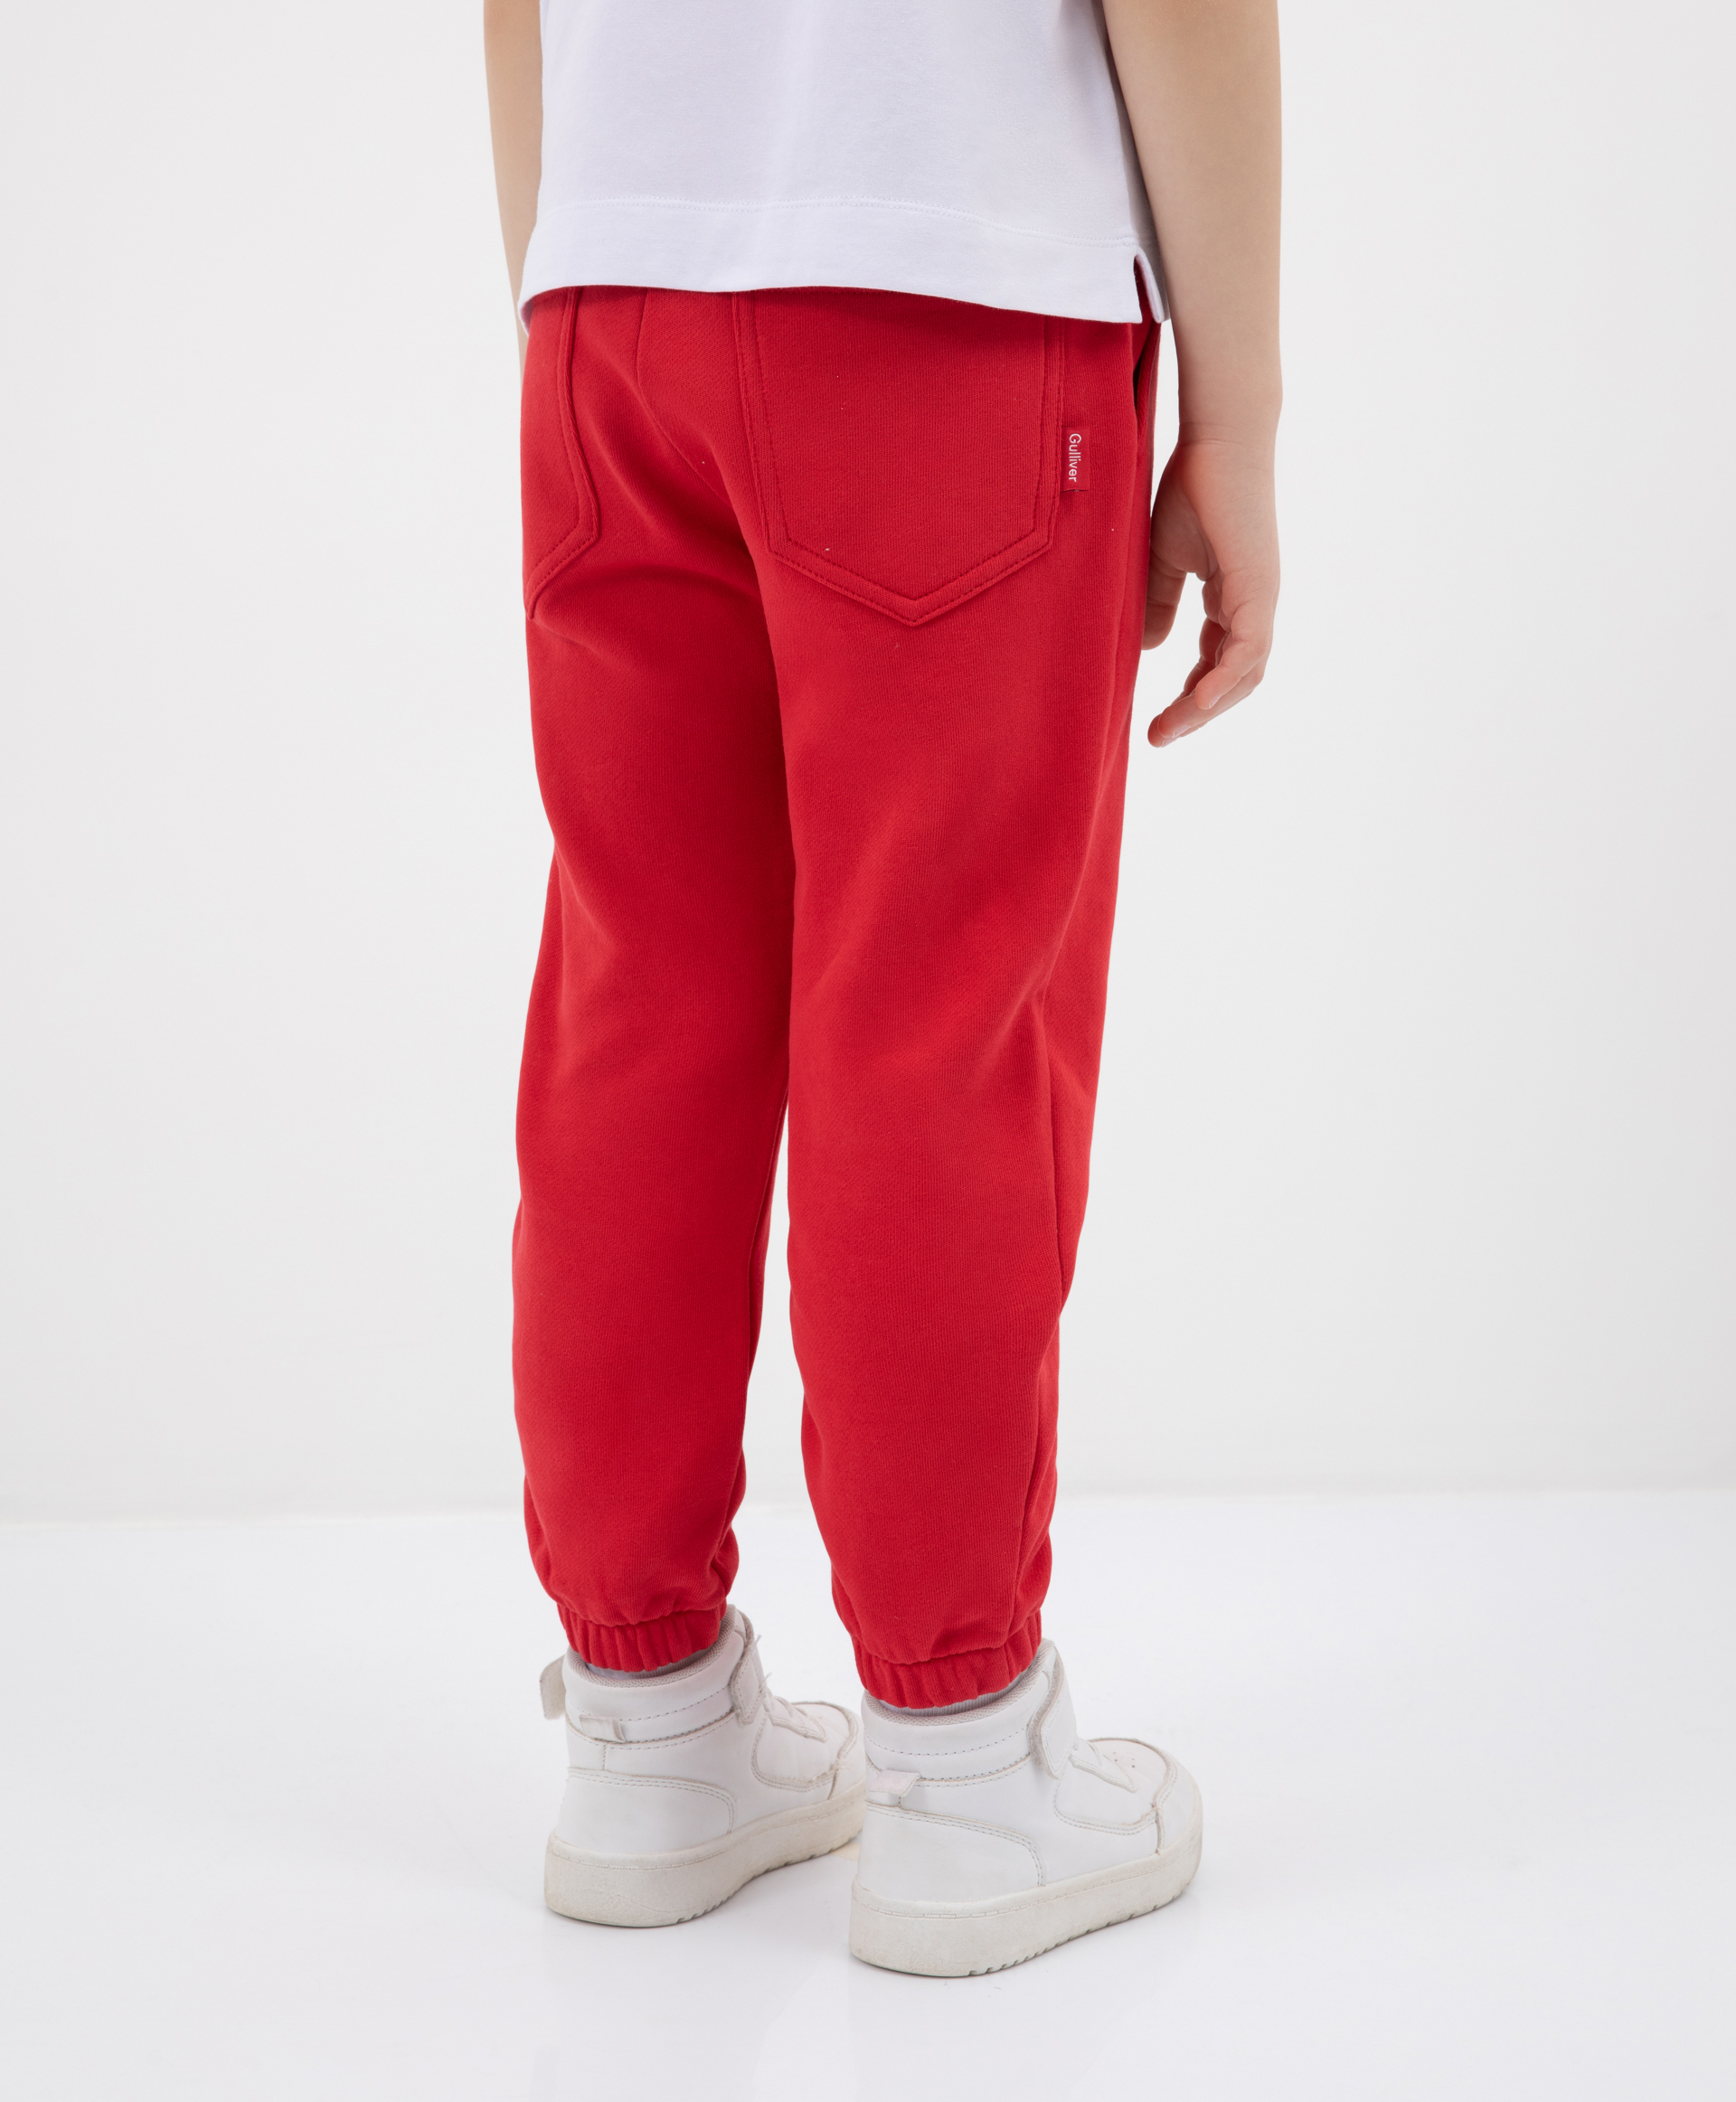 Трикотажные брюки из футера красные Gulliver 12201GMC5601, размер 110, цвет красный - фото 2